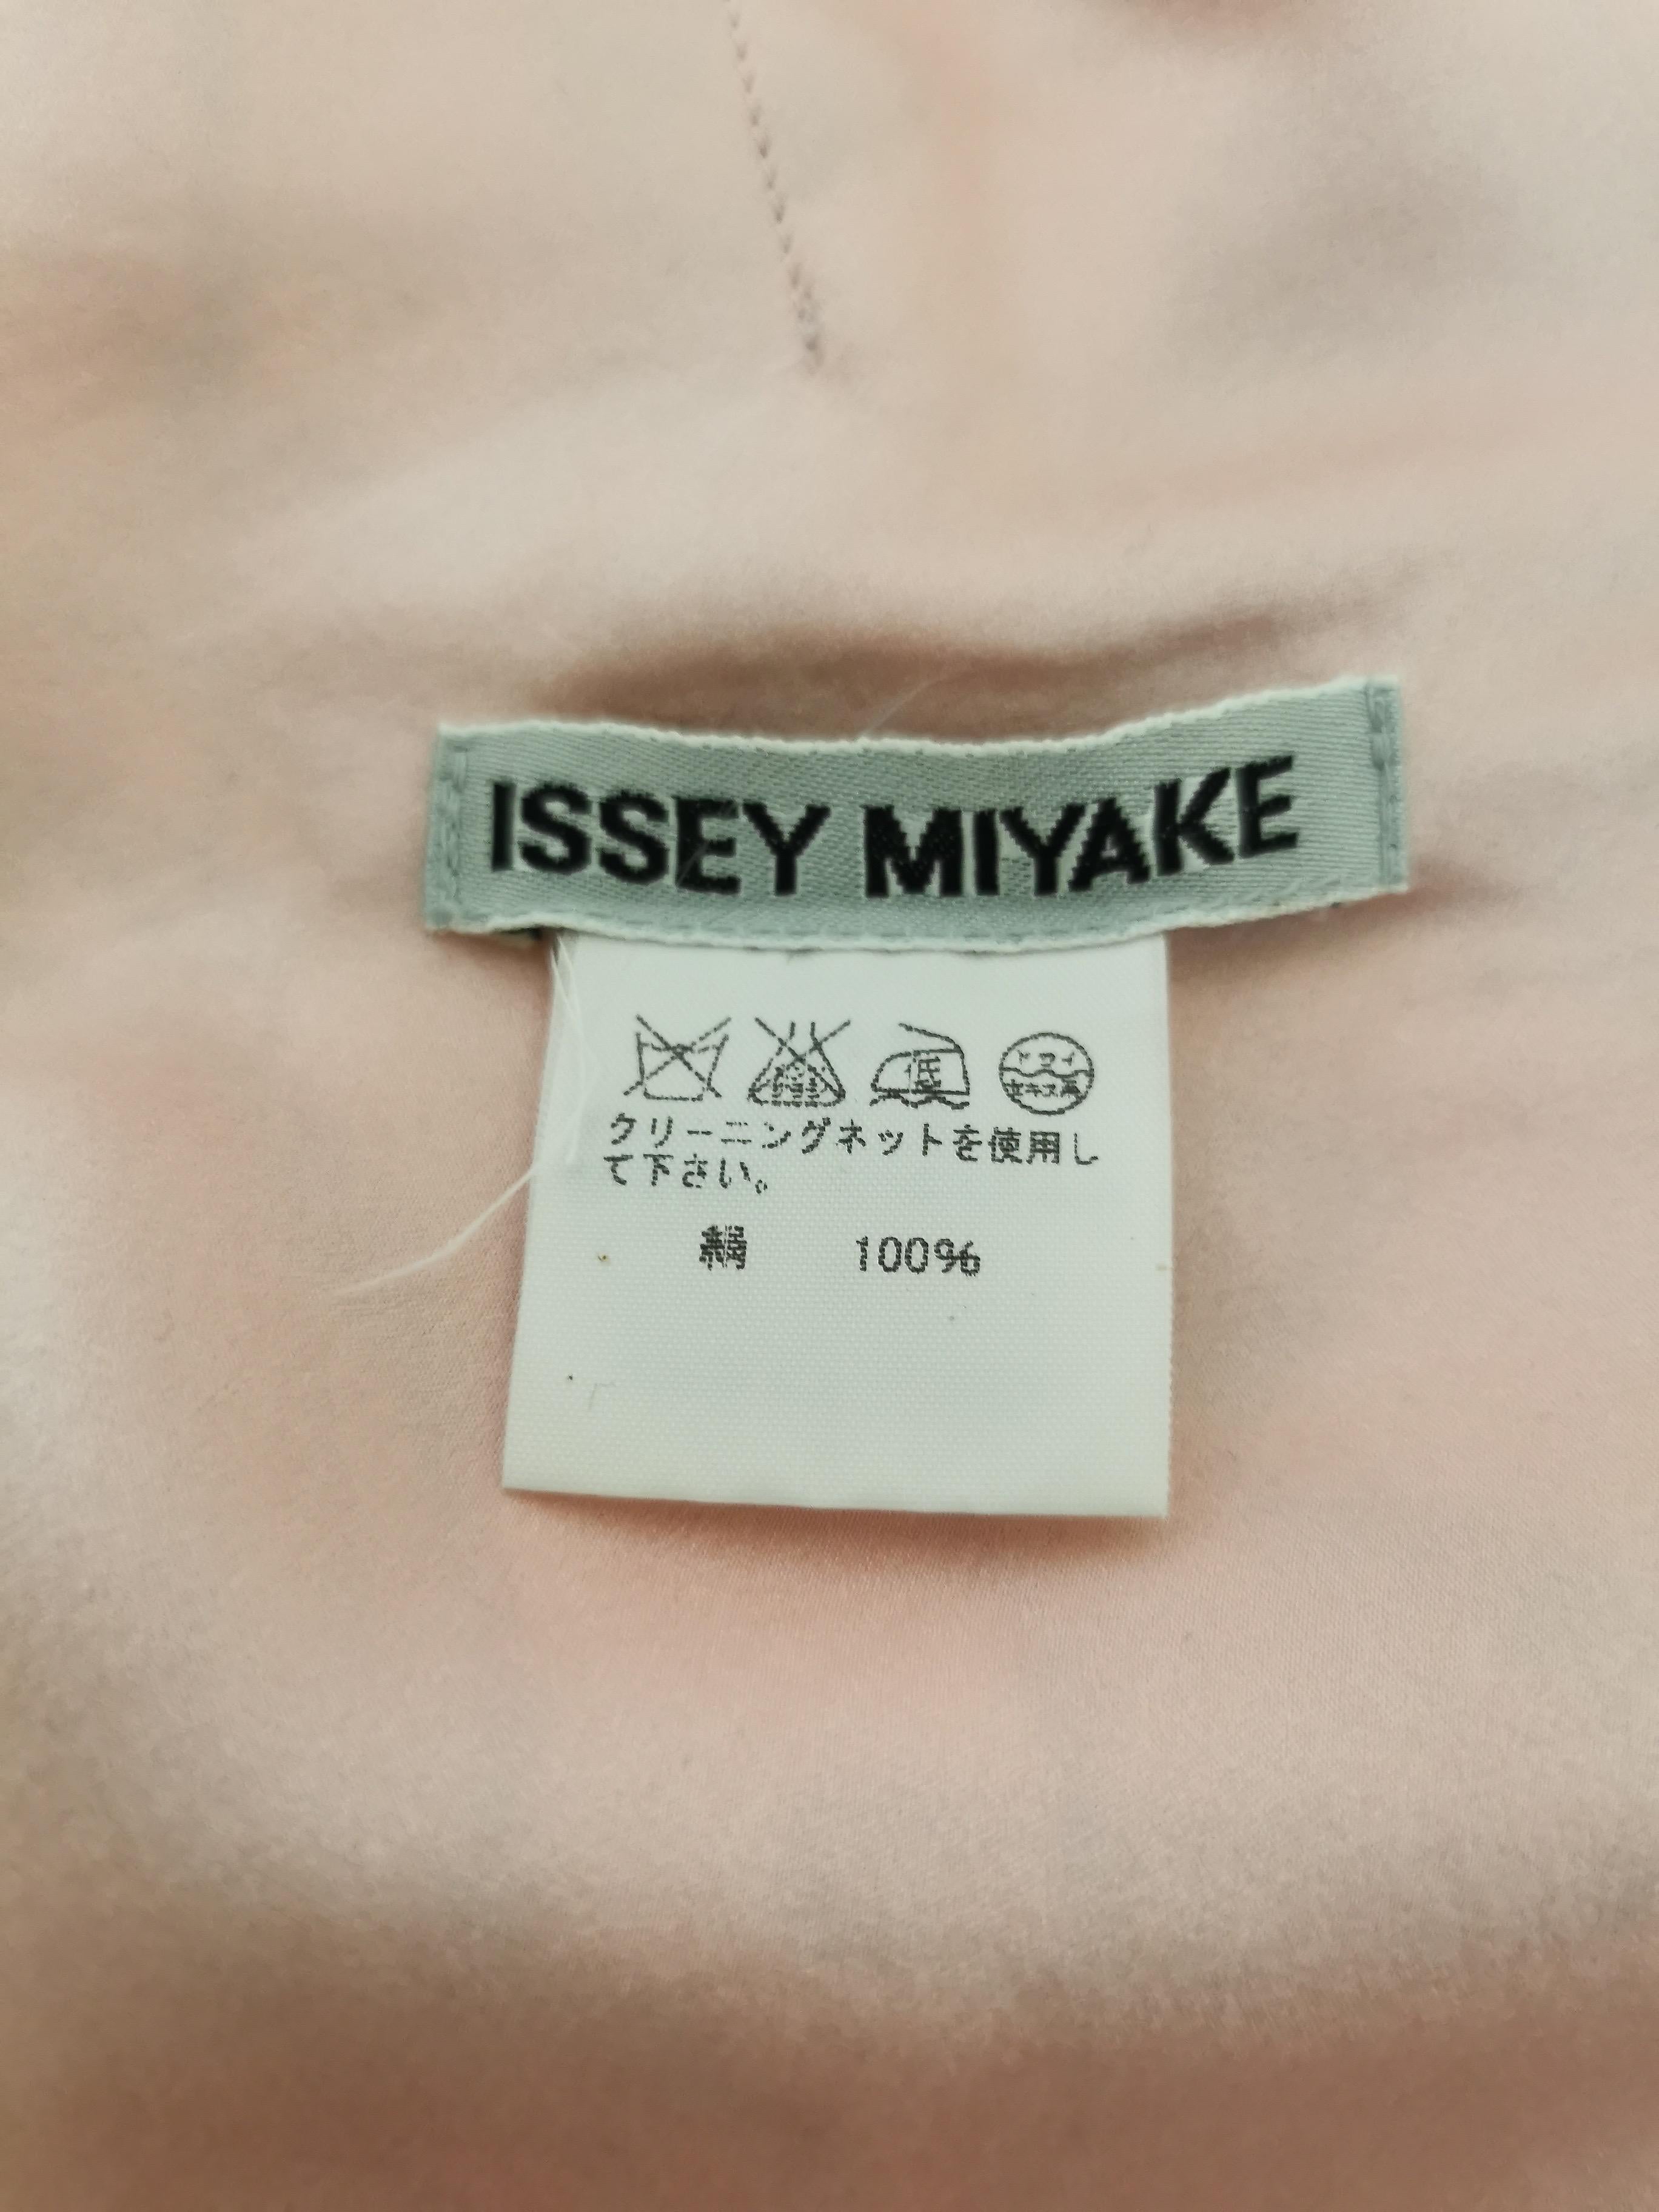 Issey Miyake Aya Takano Limited Edition 2004 Silkscreen Printed Circular Vest 9